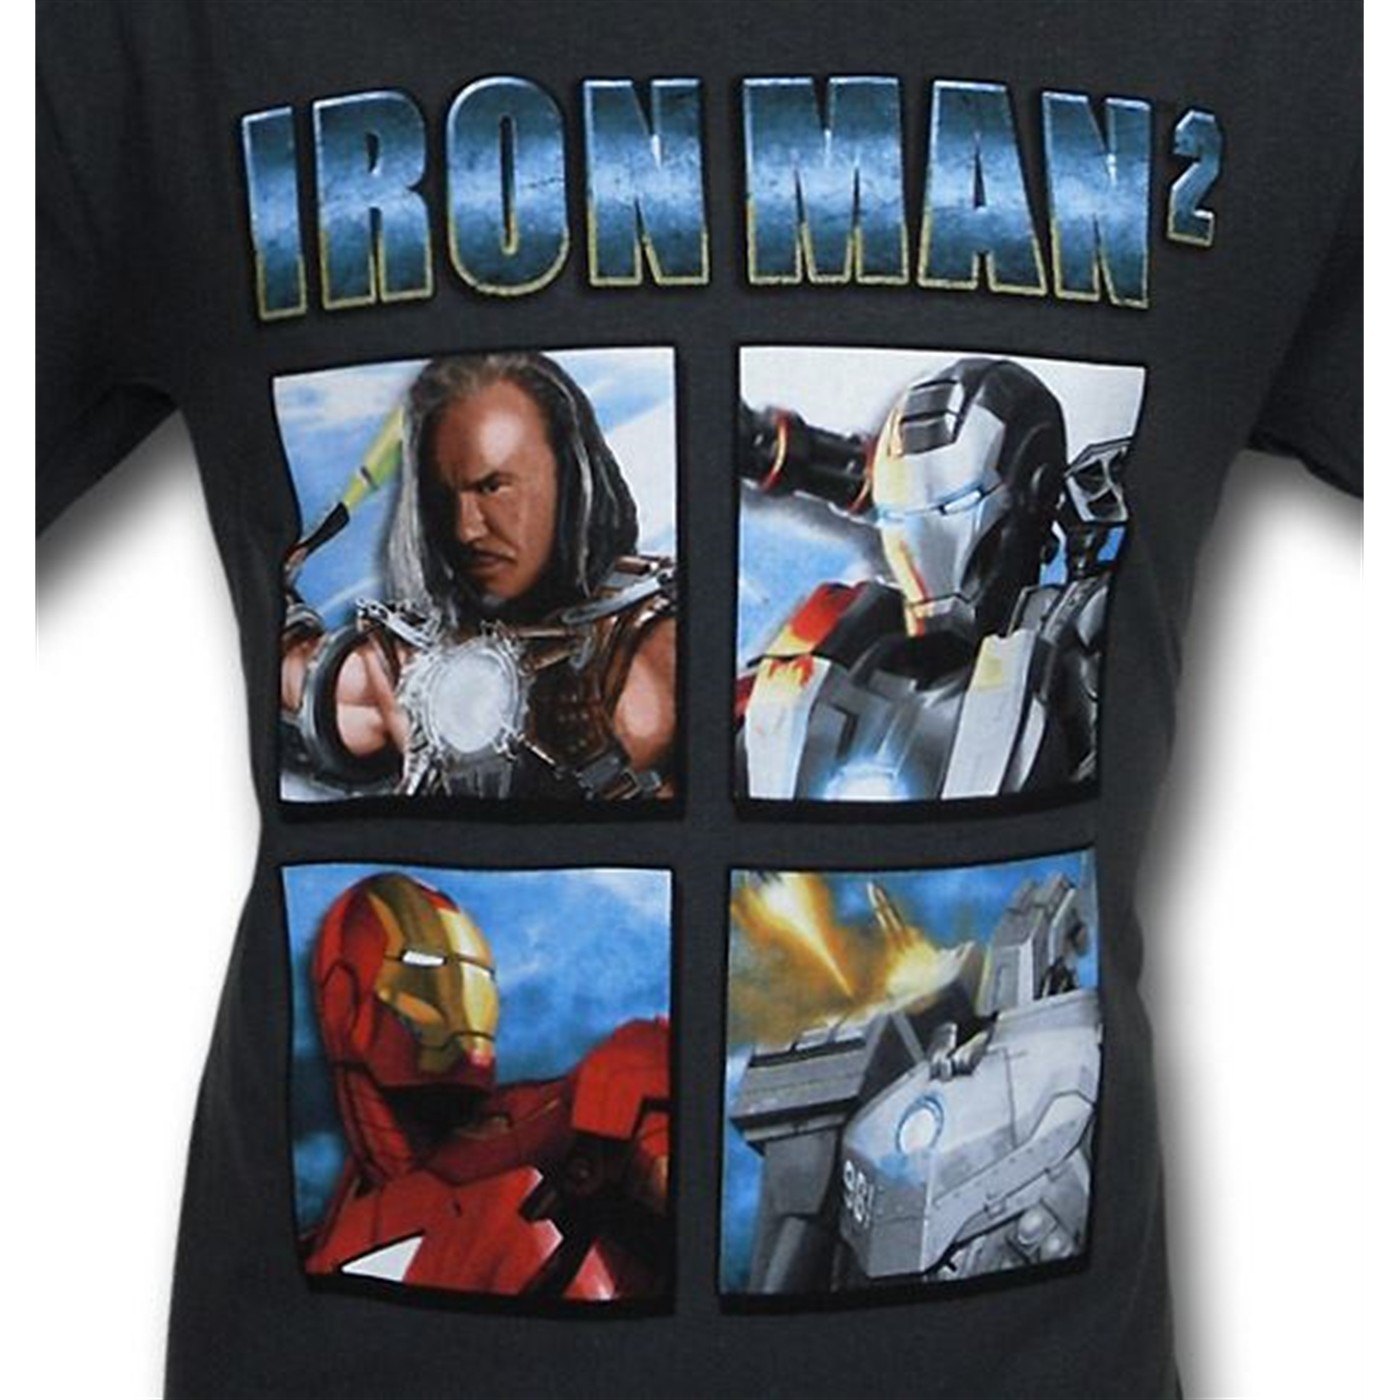 Iron Man 2 Heroes & Villains T-Shirt